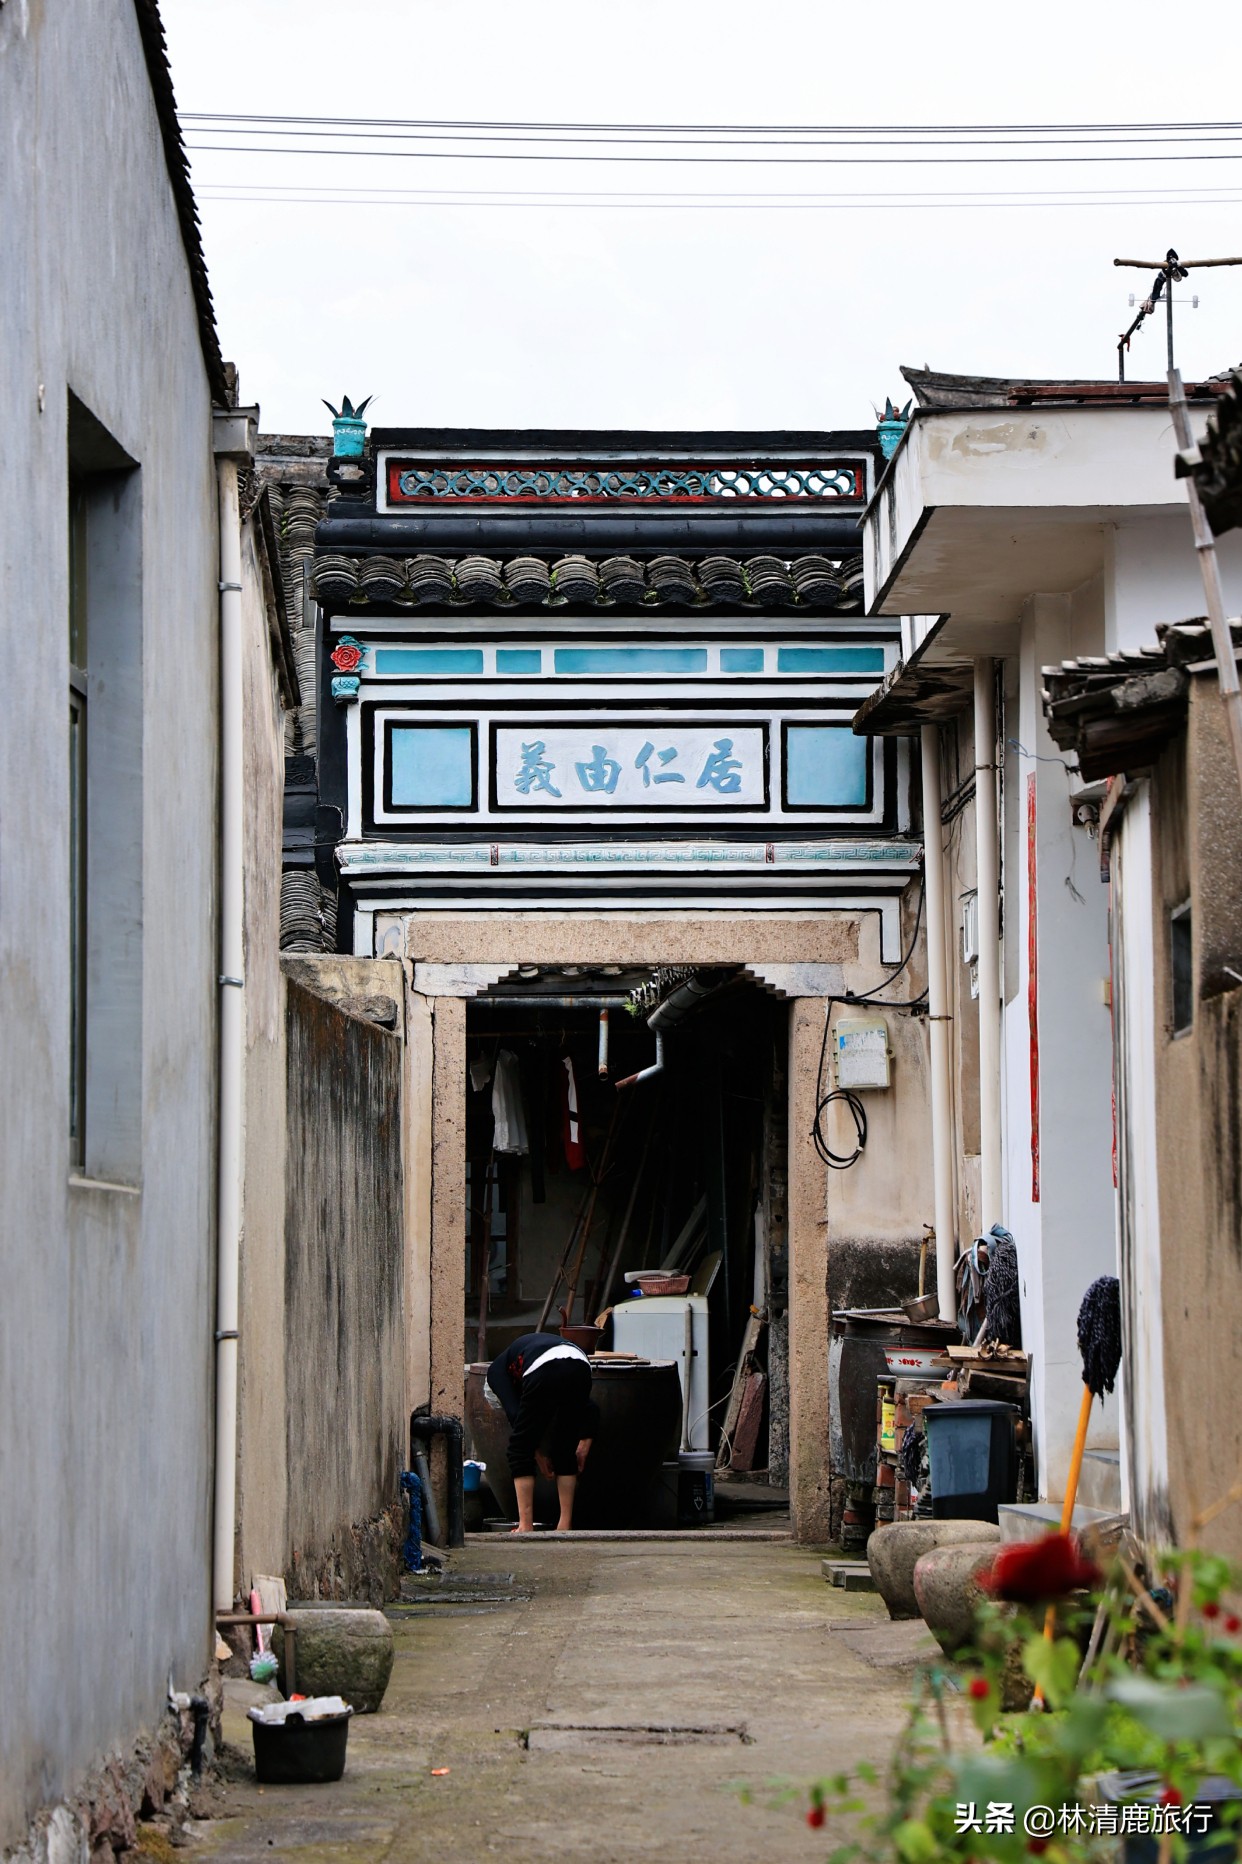 宁波有条80年代的老街，打铁铺成网红店，藏有马友友故居